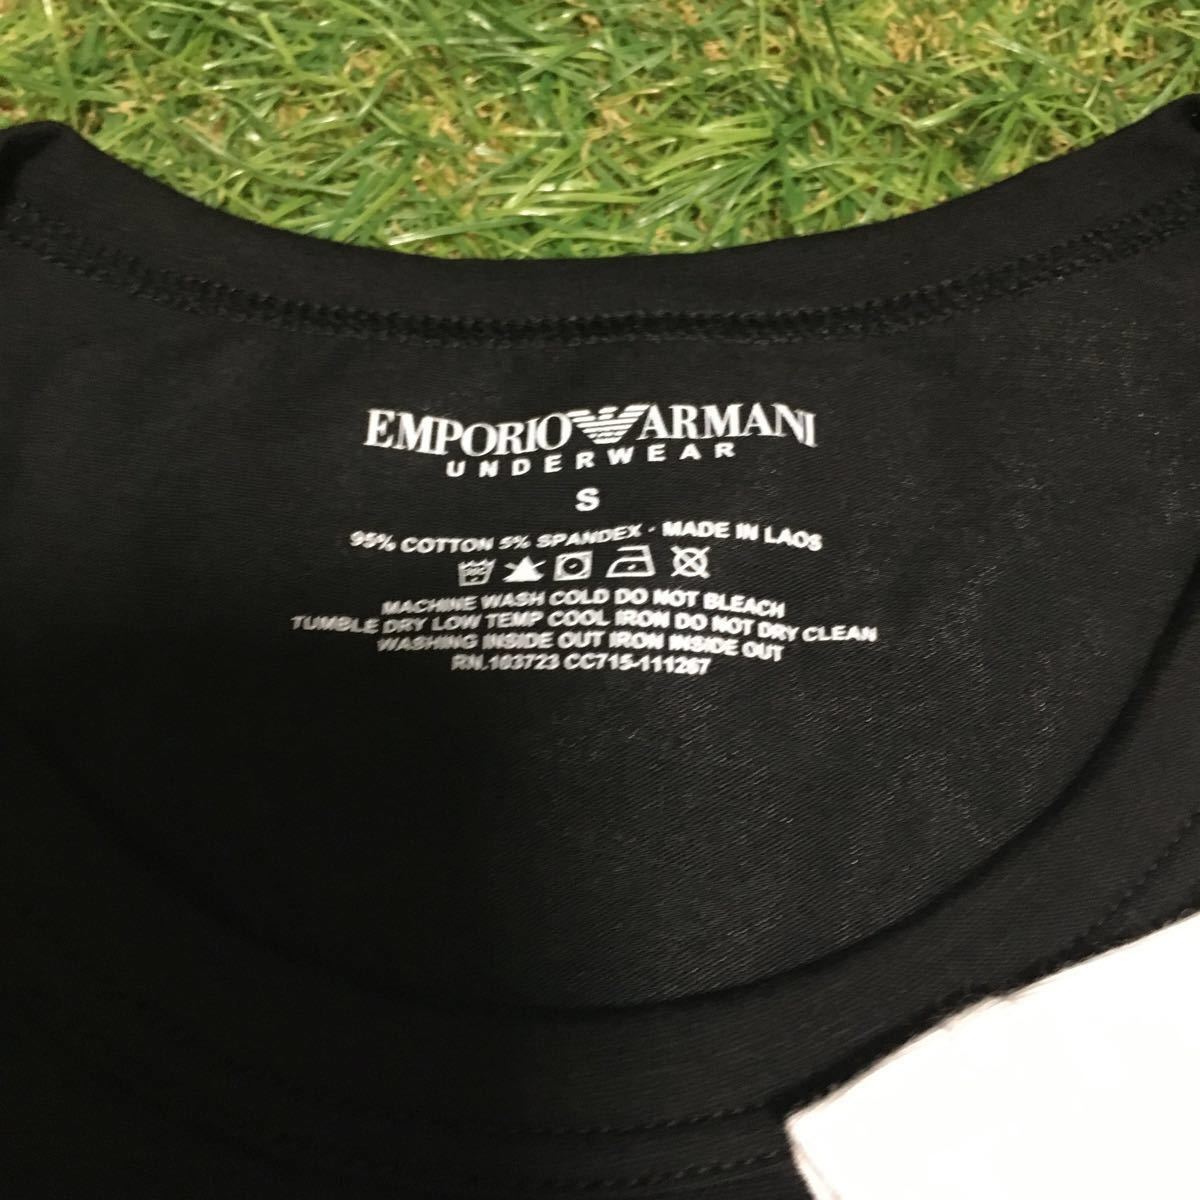 EMPORIO ARMANI Sサイズセット新品未使用自宅保管品タグ付き白&黒